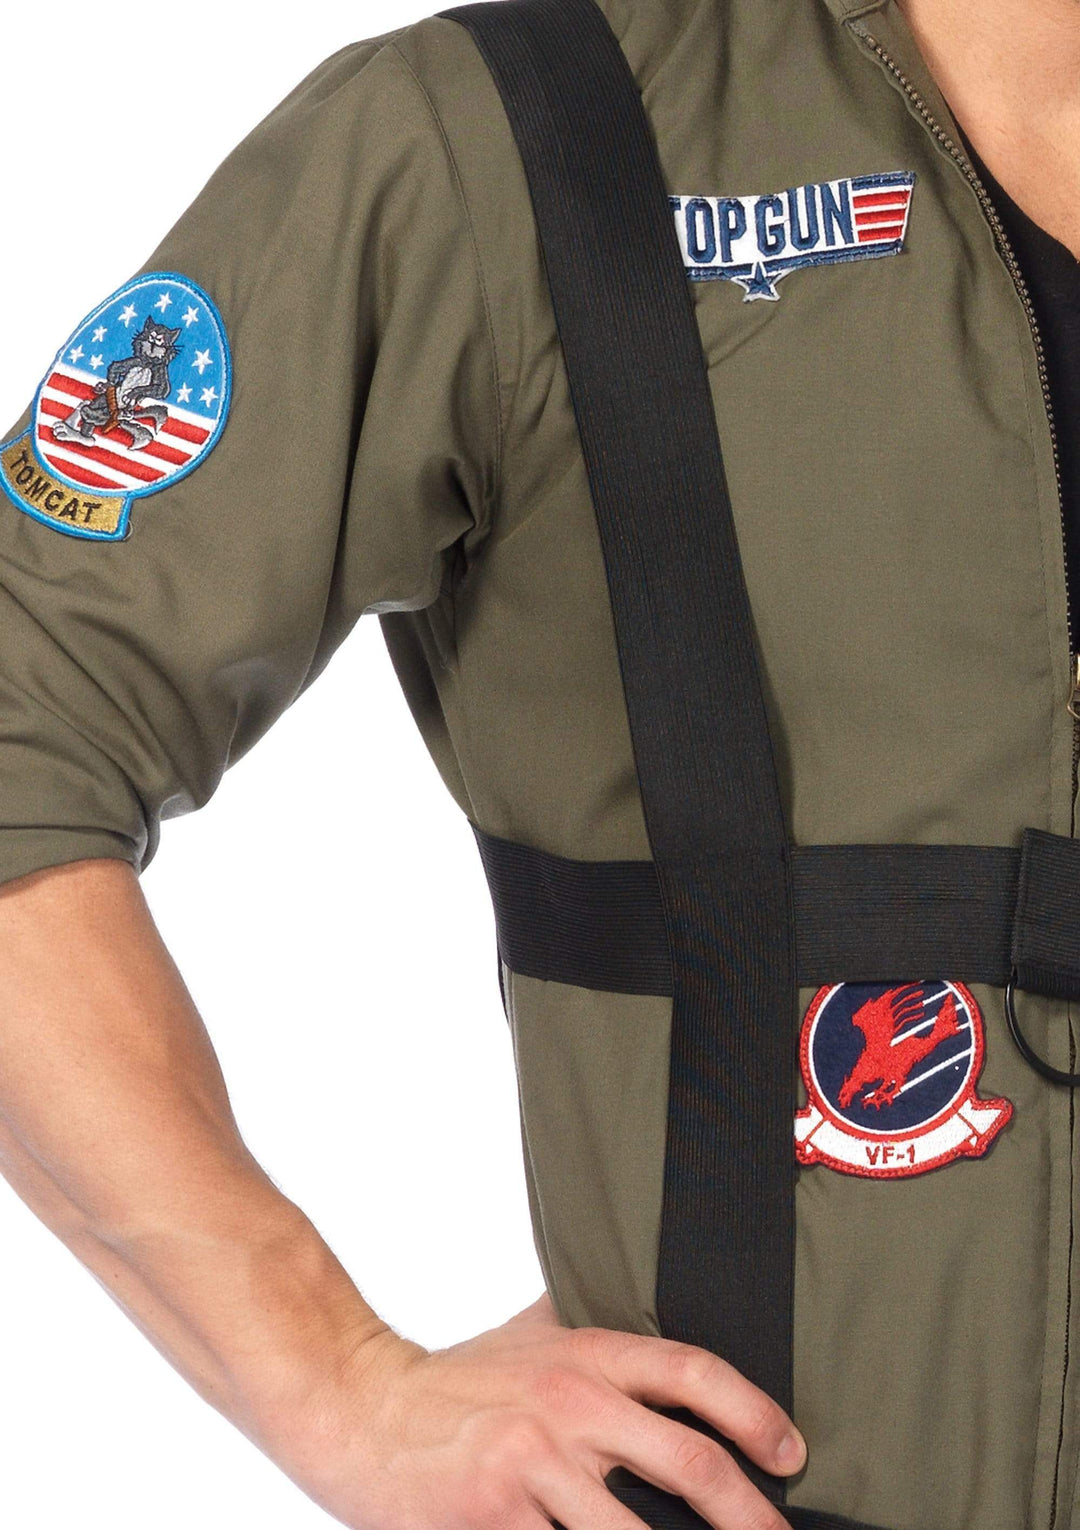 Top Gun Paratrooper Flight Suit with Maverick and Goose Name Badges